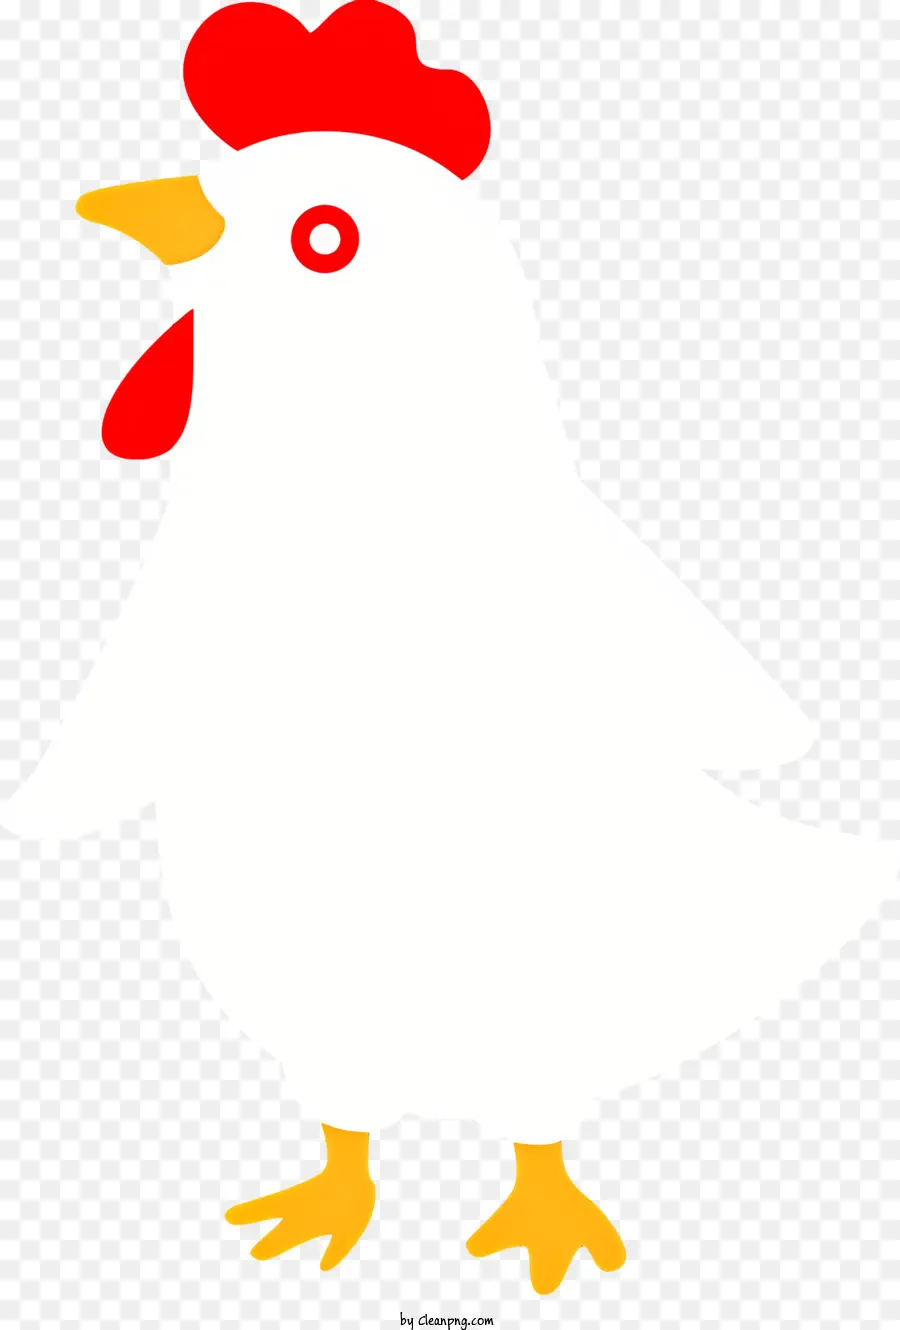 Cartoon Hühnchen weißes Hühnchen rotes Schnabel Huhn mit schwarzen Augen Hühnchen mit gelben Kragen - Cartoonhähnchen mit rotem Schnabel mit Kragen